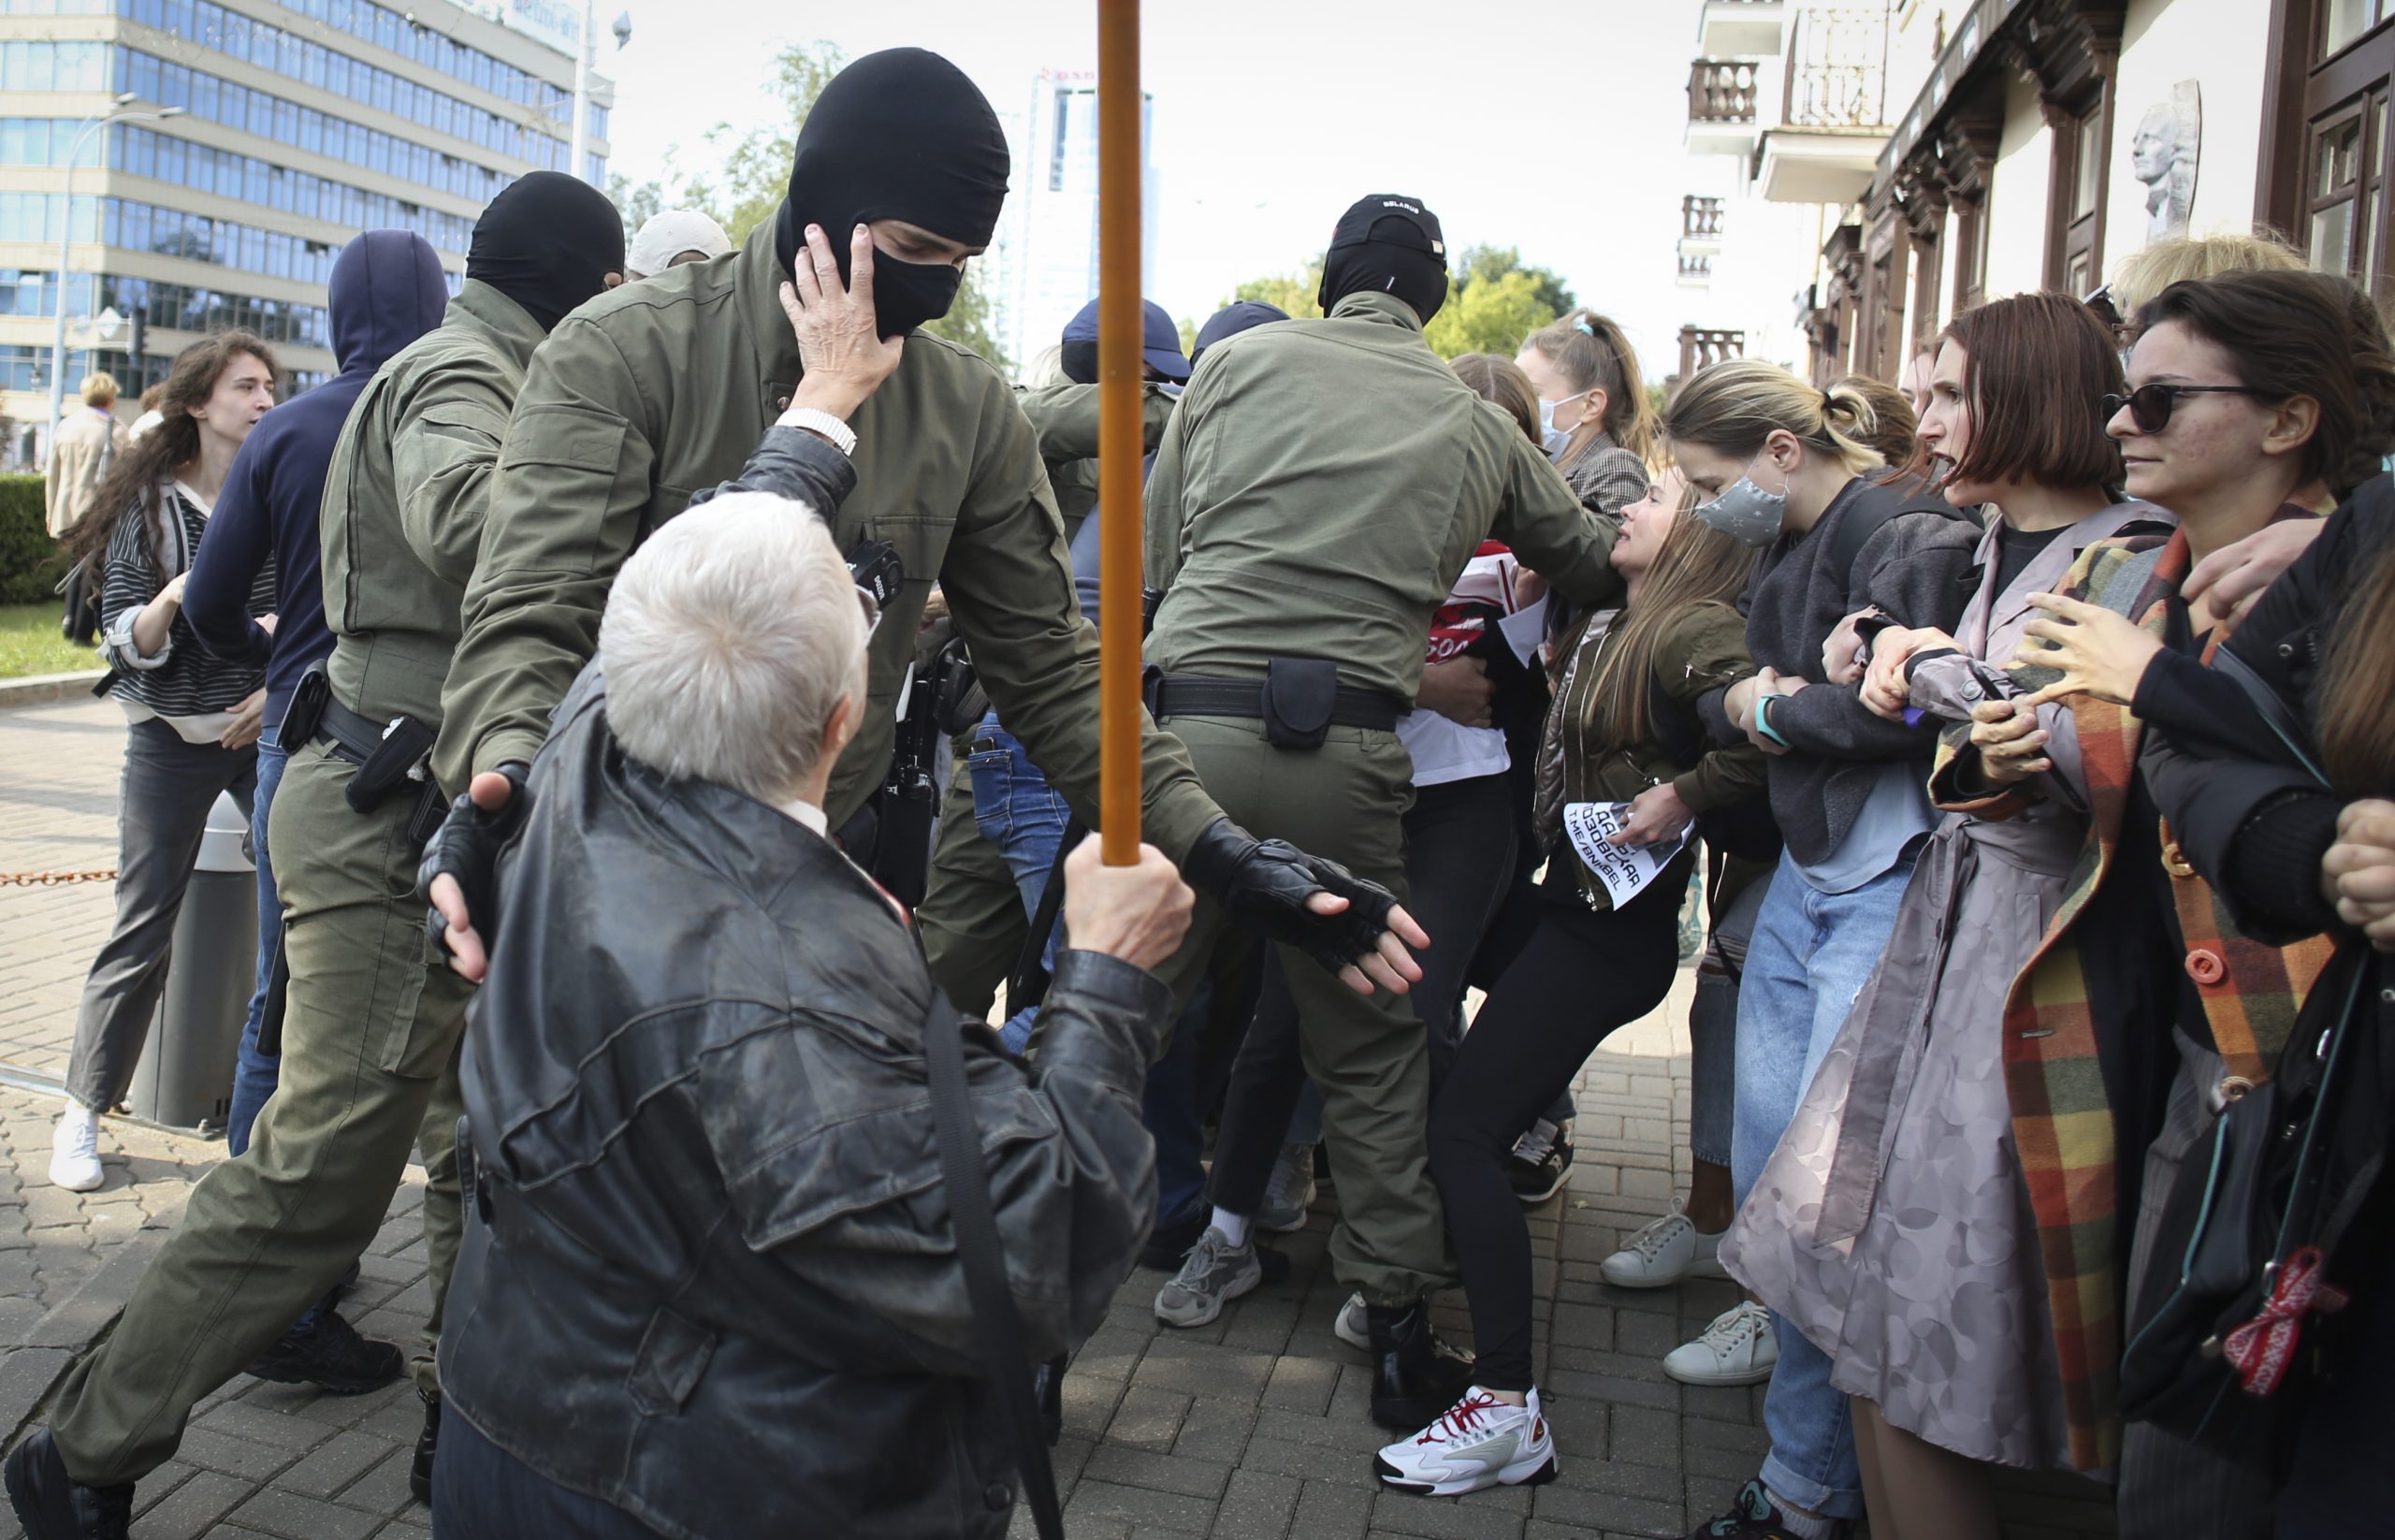 Пожилая участница протеста пытается сорвать балаклаву с силовика. Фото Tut.by via AP/Scanpix/Leta